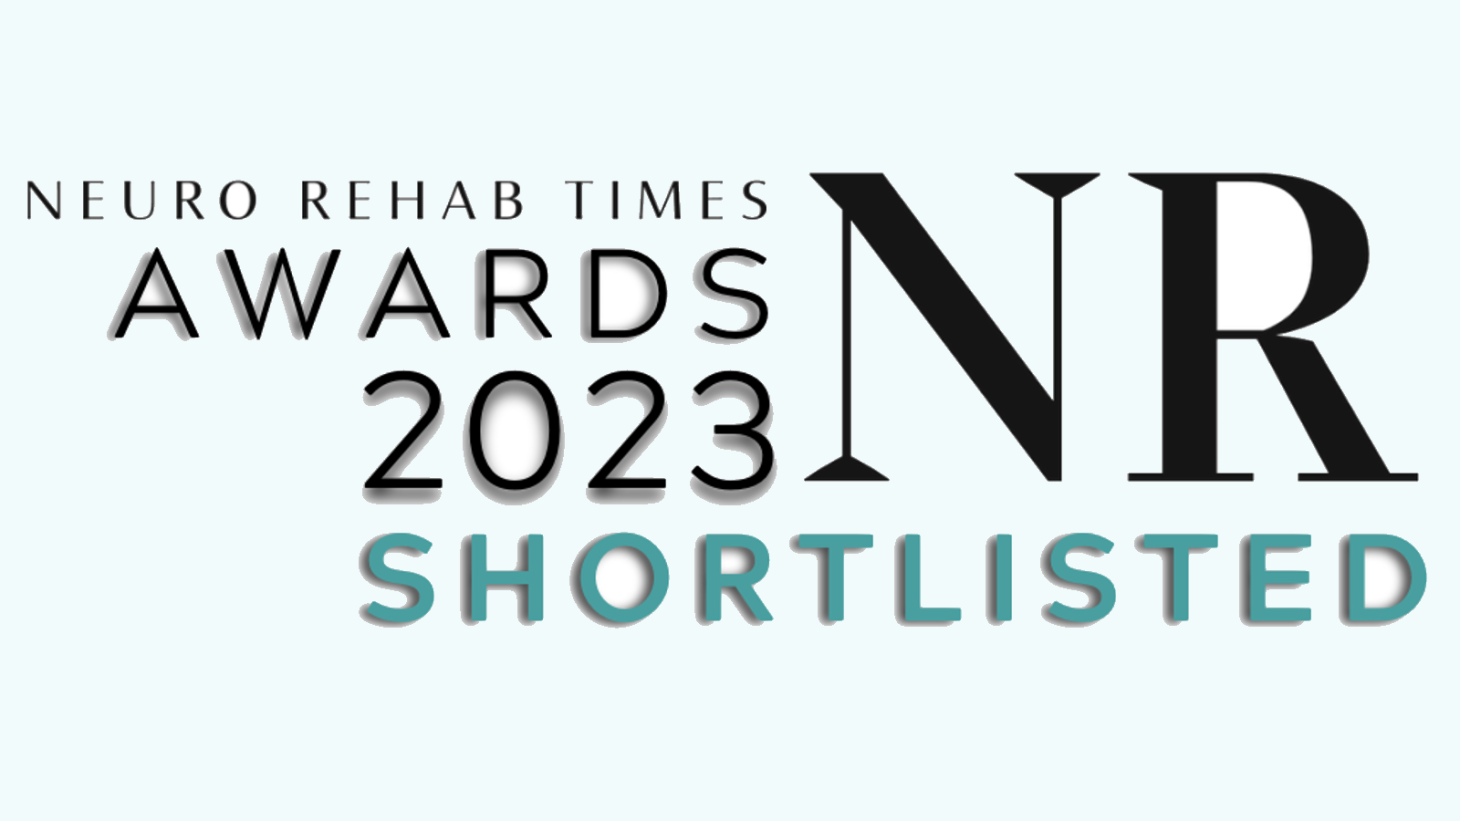 Neuro Rehab Times Awards 2023 Shortlisted logo